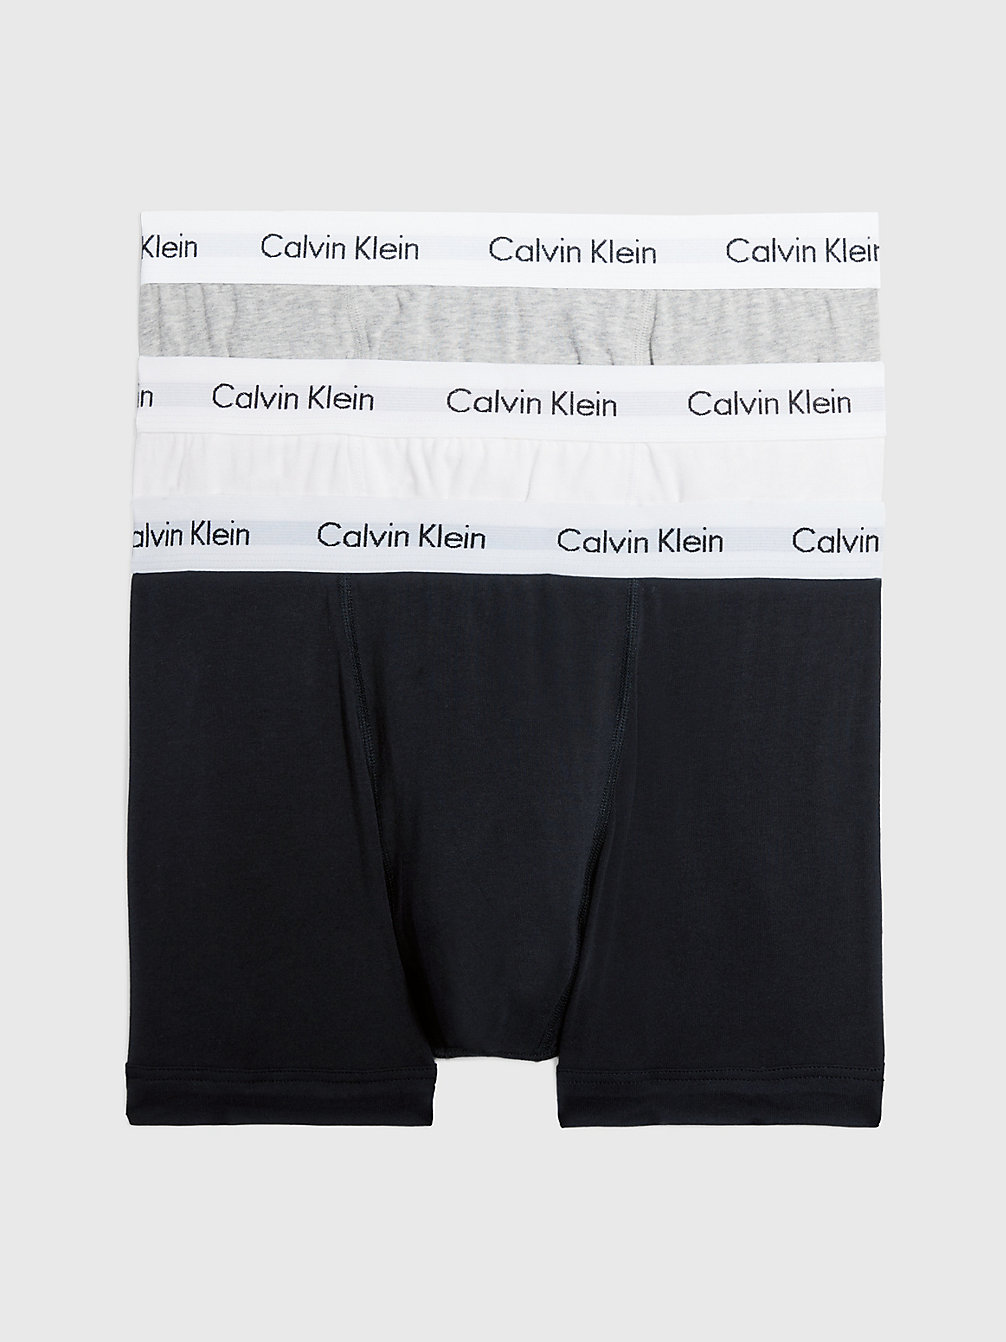 BLACK/WHITE/GREY HEATHER > Комплект боксеров 3 шт. - Cotton Stretch > undefined женщины - Calvin Klein